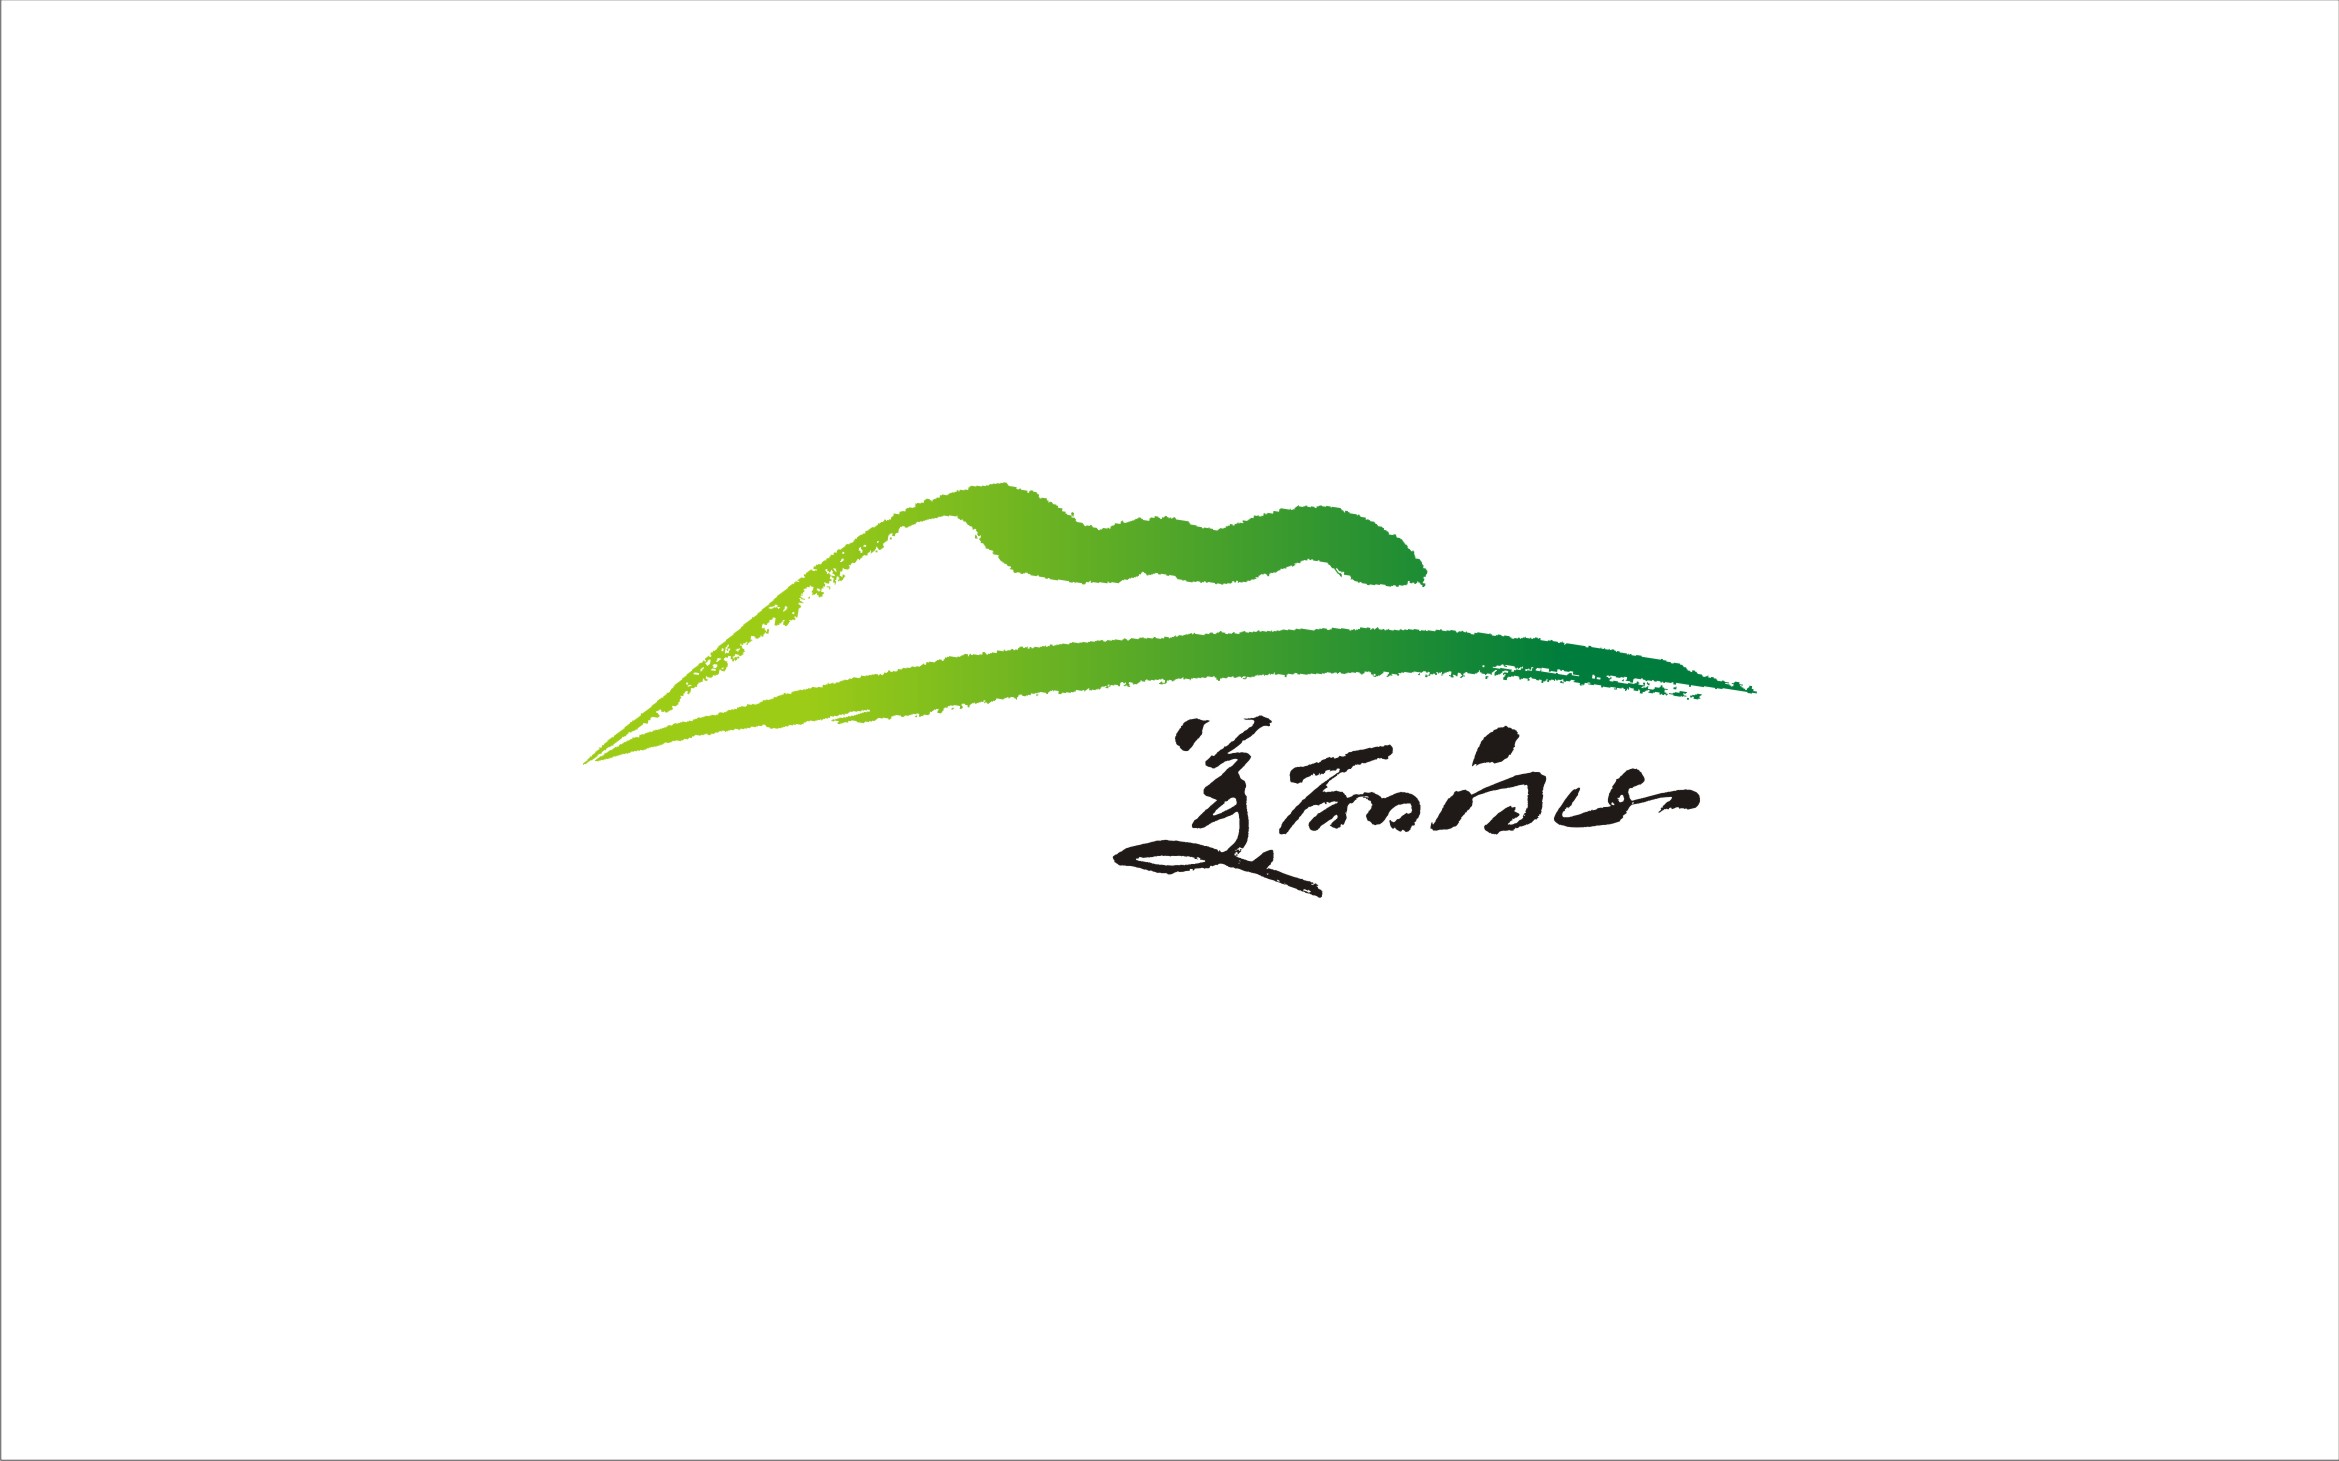 乡村美学logo图片